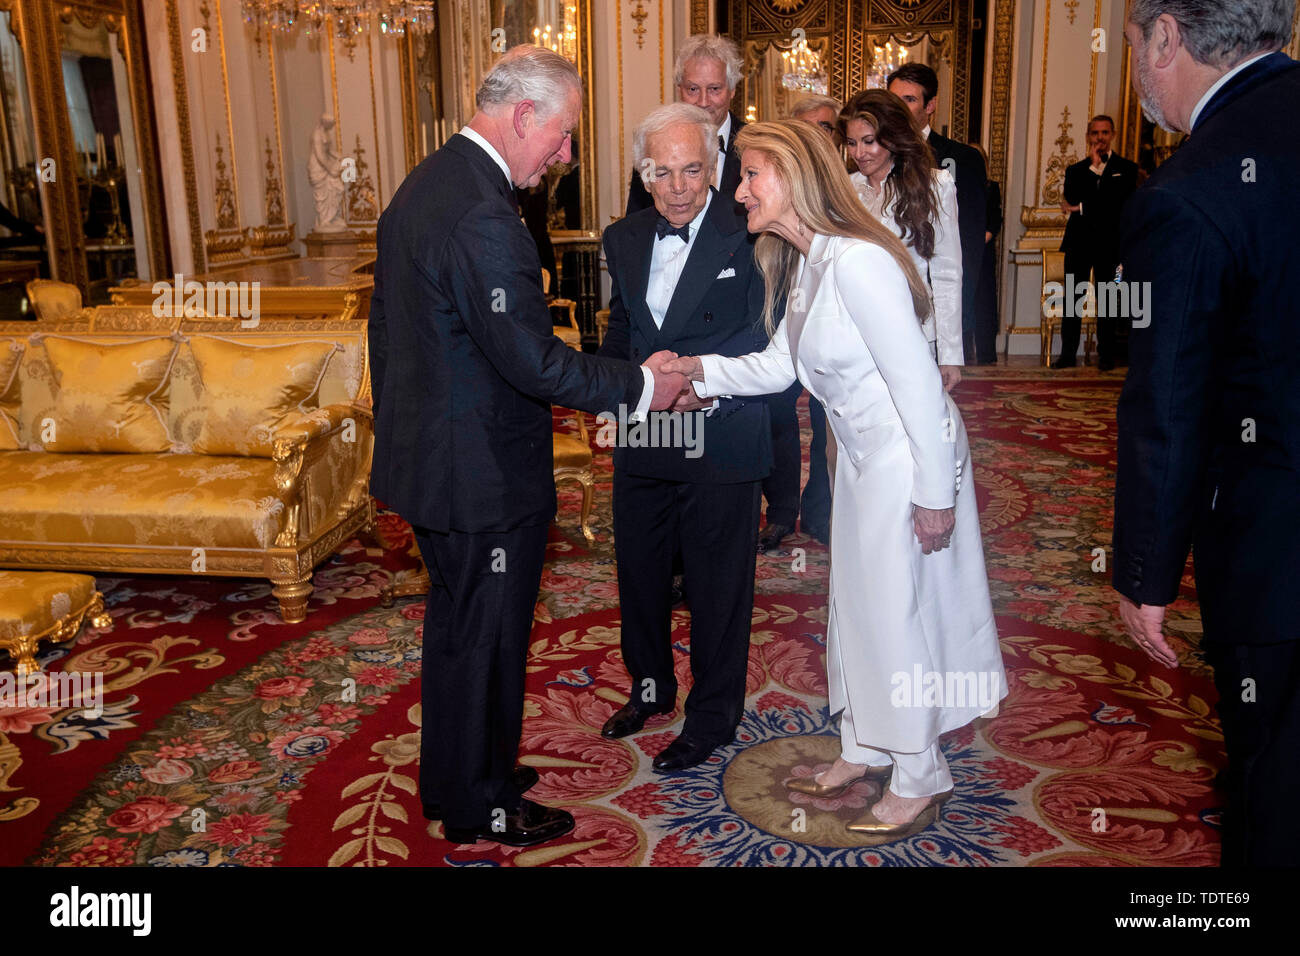 El Príncipe de Gales, el diseñador Ralph Lauren y su esposa Ricky Lauren después fue presentado con su honorario KBE (Caballero Comandante de la Orden del Imperio Británico) por servicios prestados a la moda en una ceremonia privada en el Palacio de Buckingham. Foto de stock